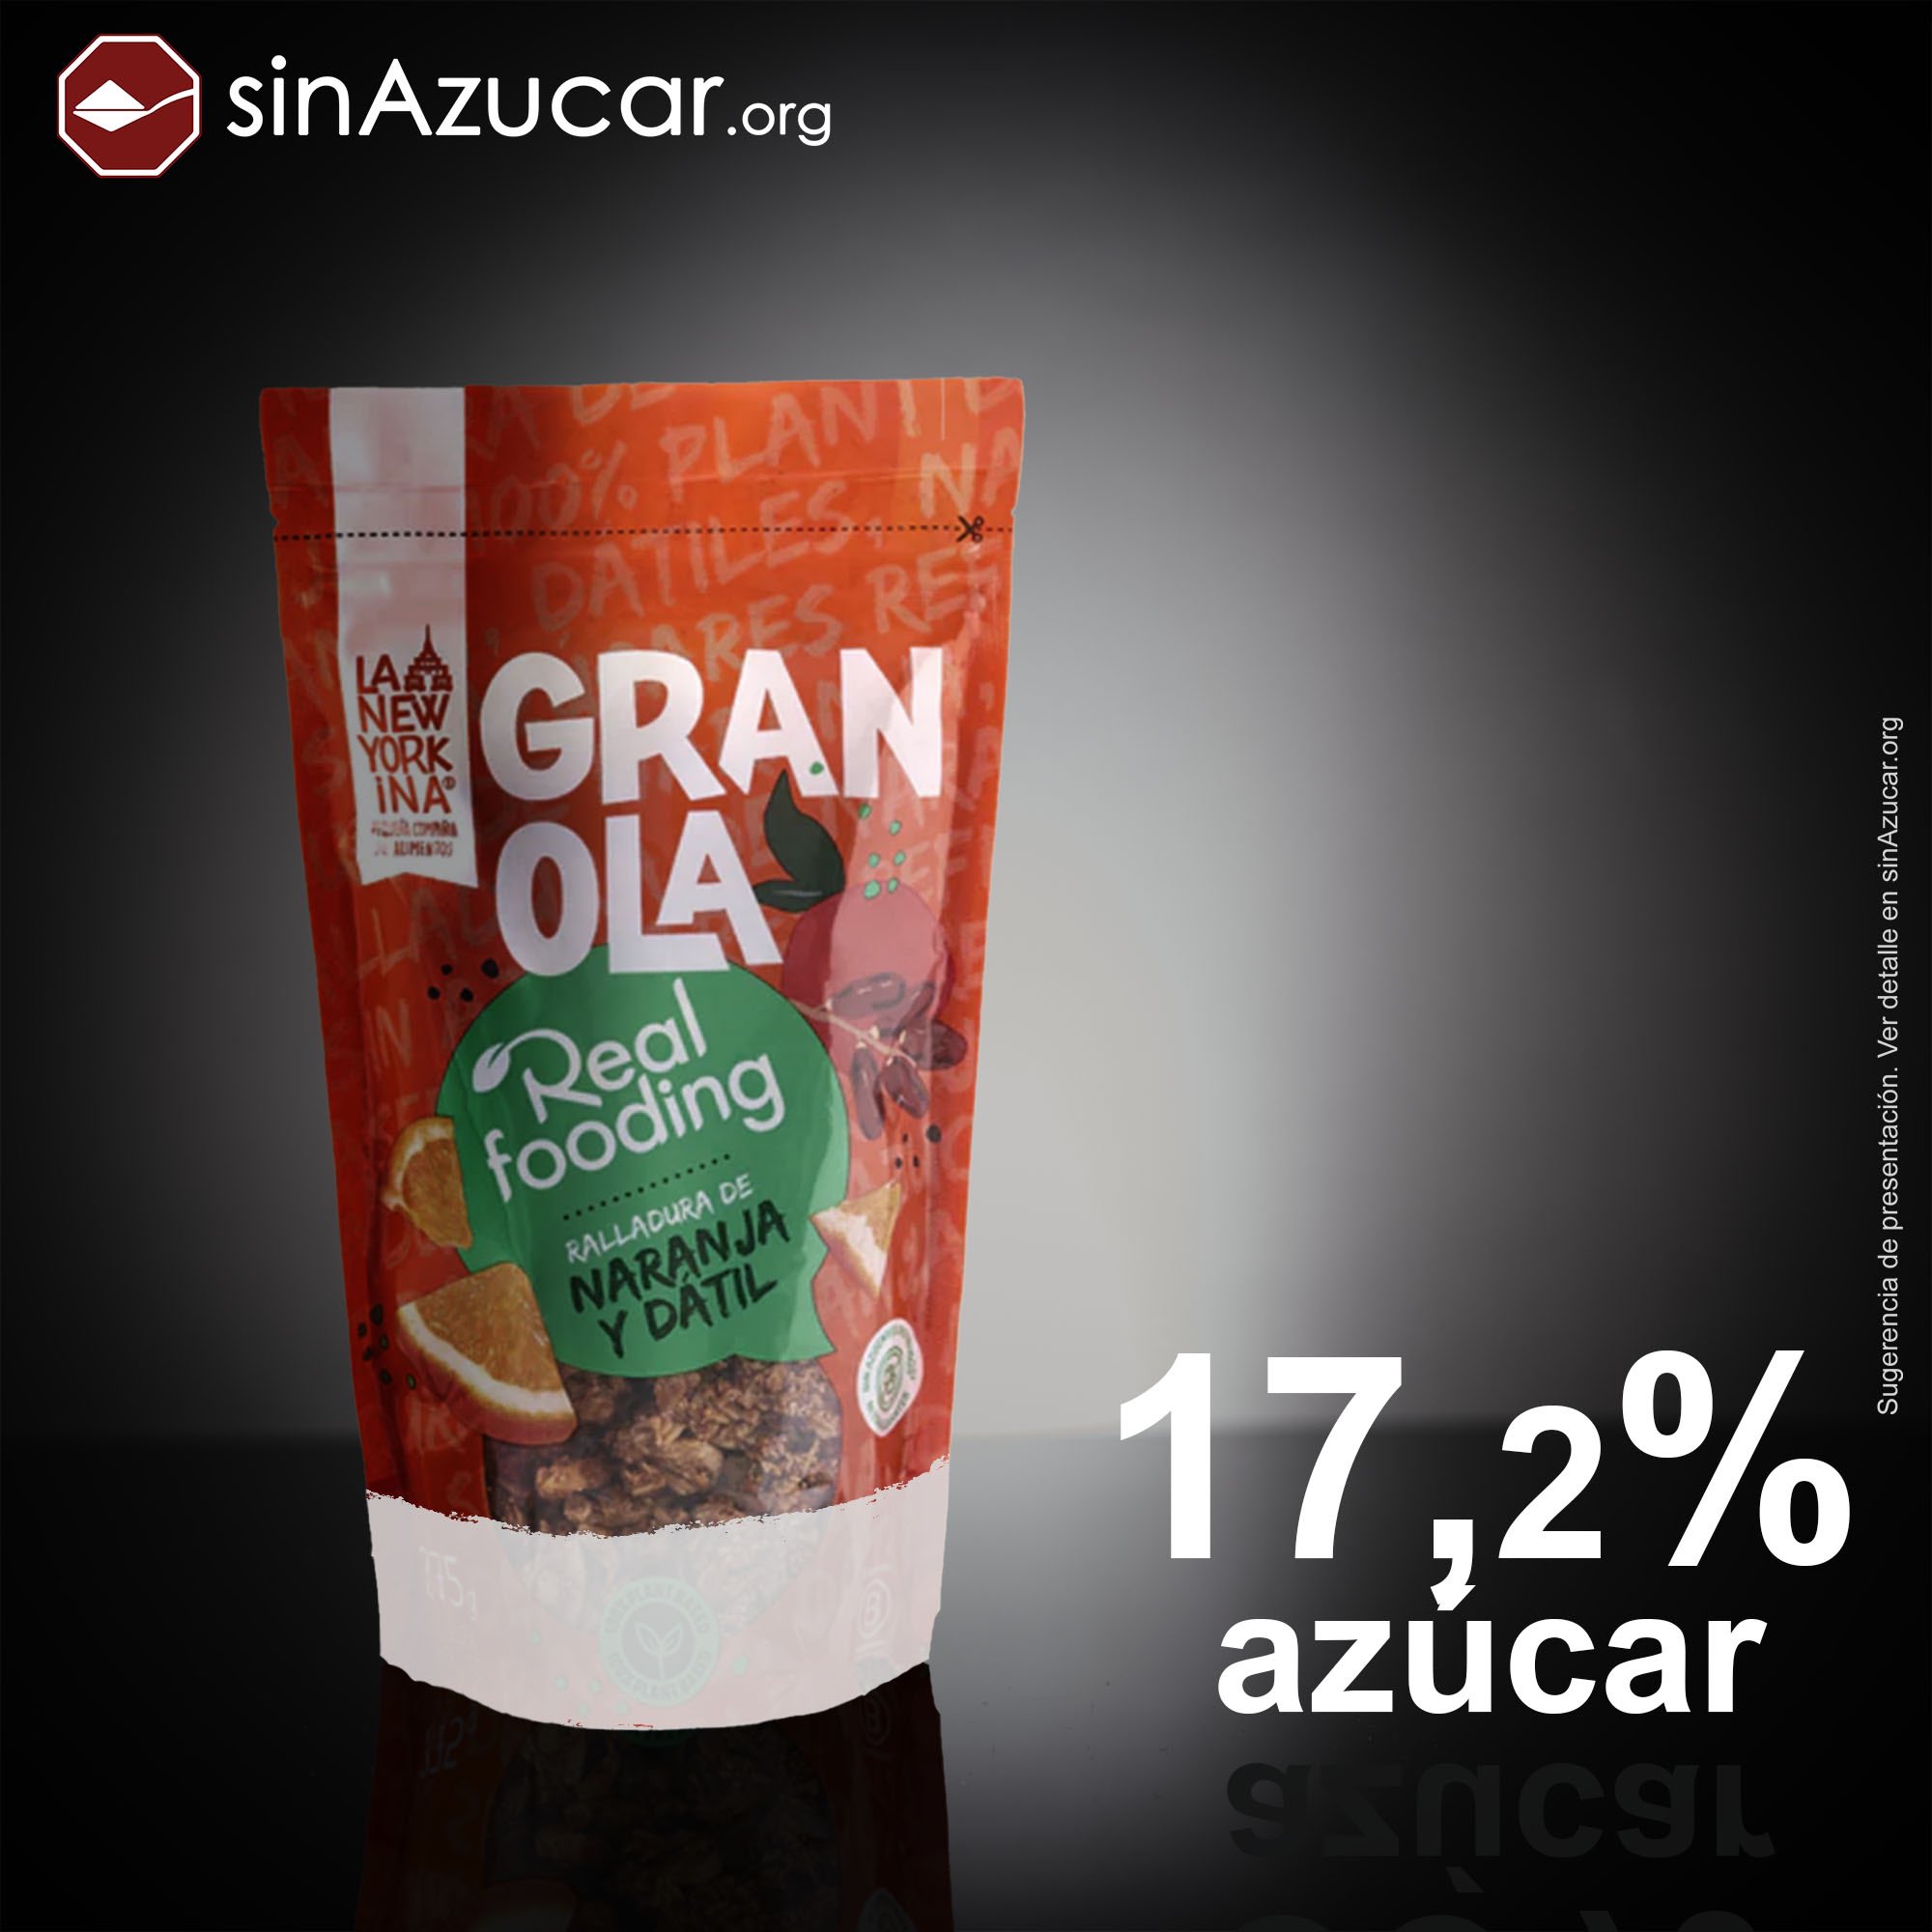 sinAzucar.org on X: La granola Realfooding contiene un 17,2% de azúcares  libres. Estos azúcares vienen de la pasta de dátil. Cuando se tritura, se  rompe la estructura y se libera el azúcar